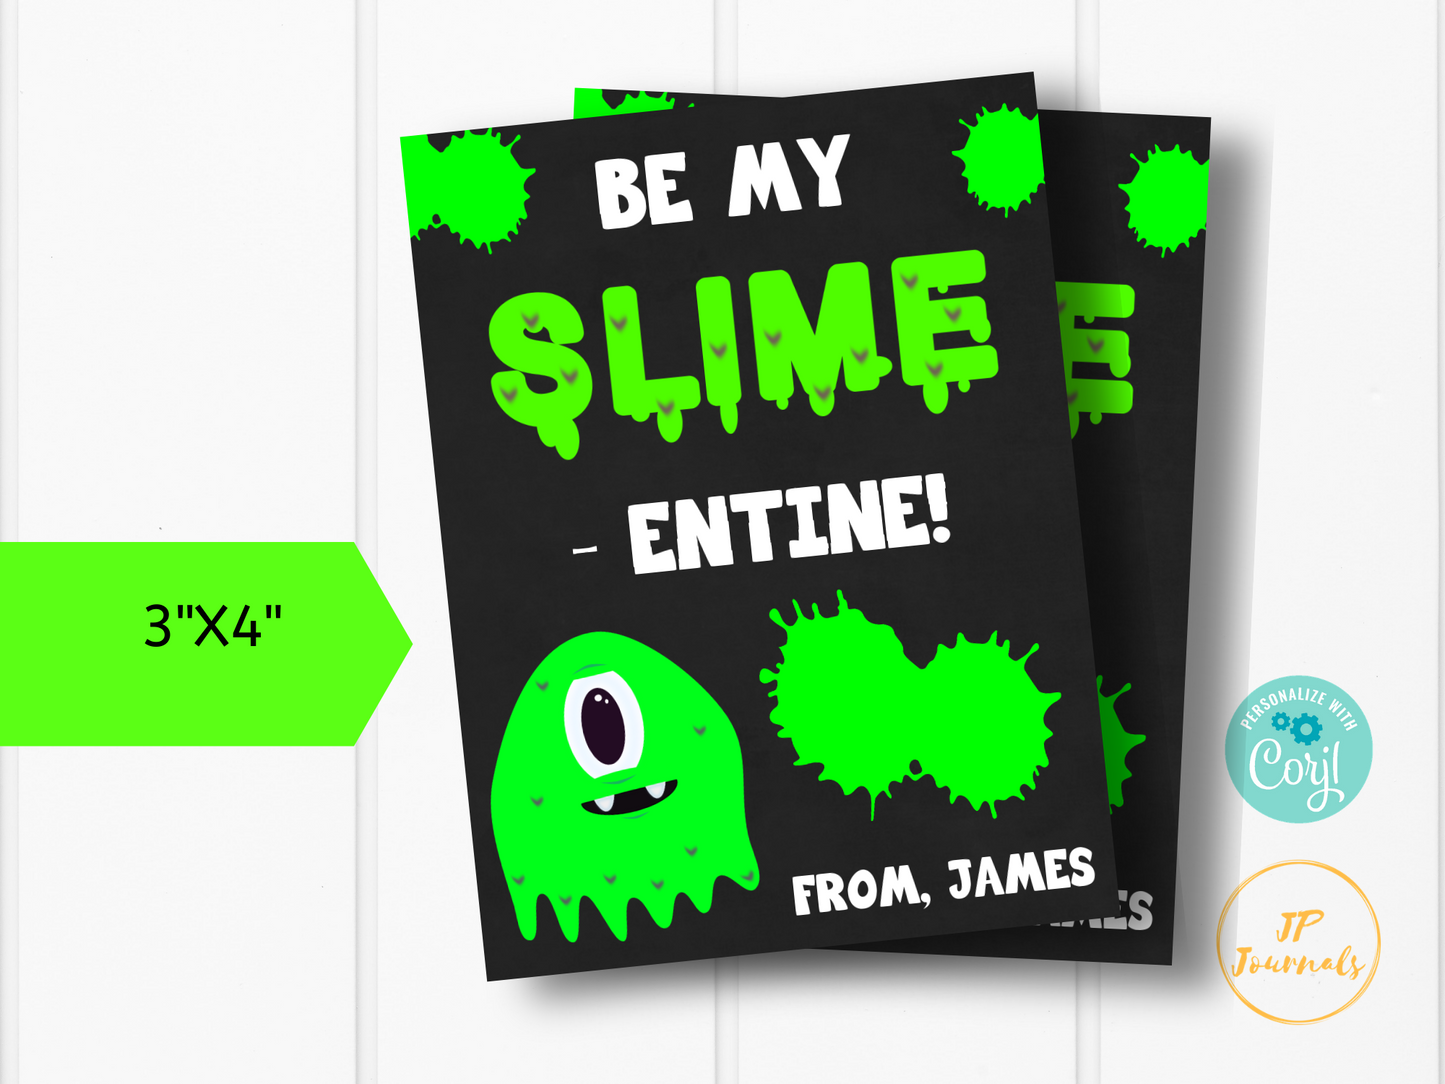 Slime Valentine Printable- Edit Online Print at Hom